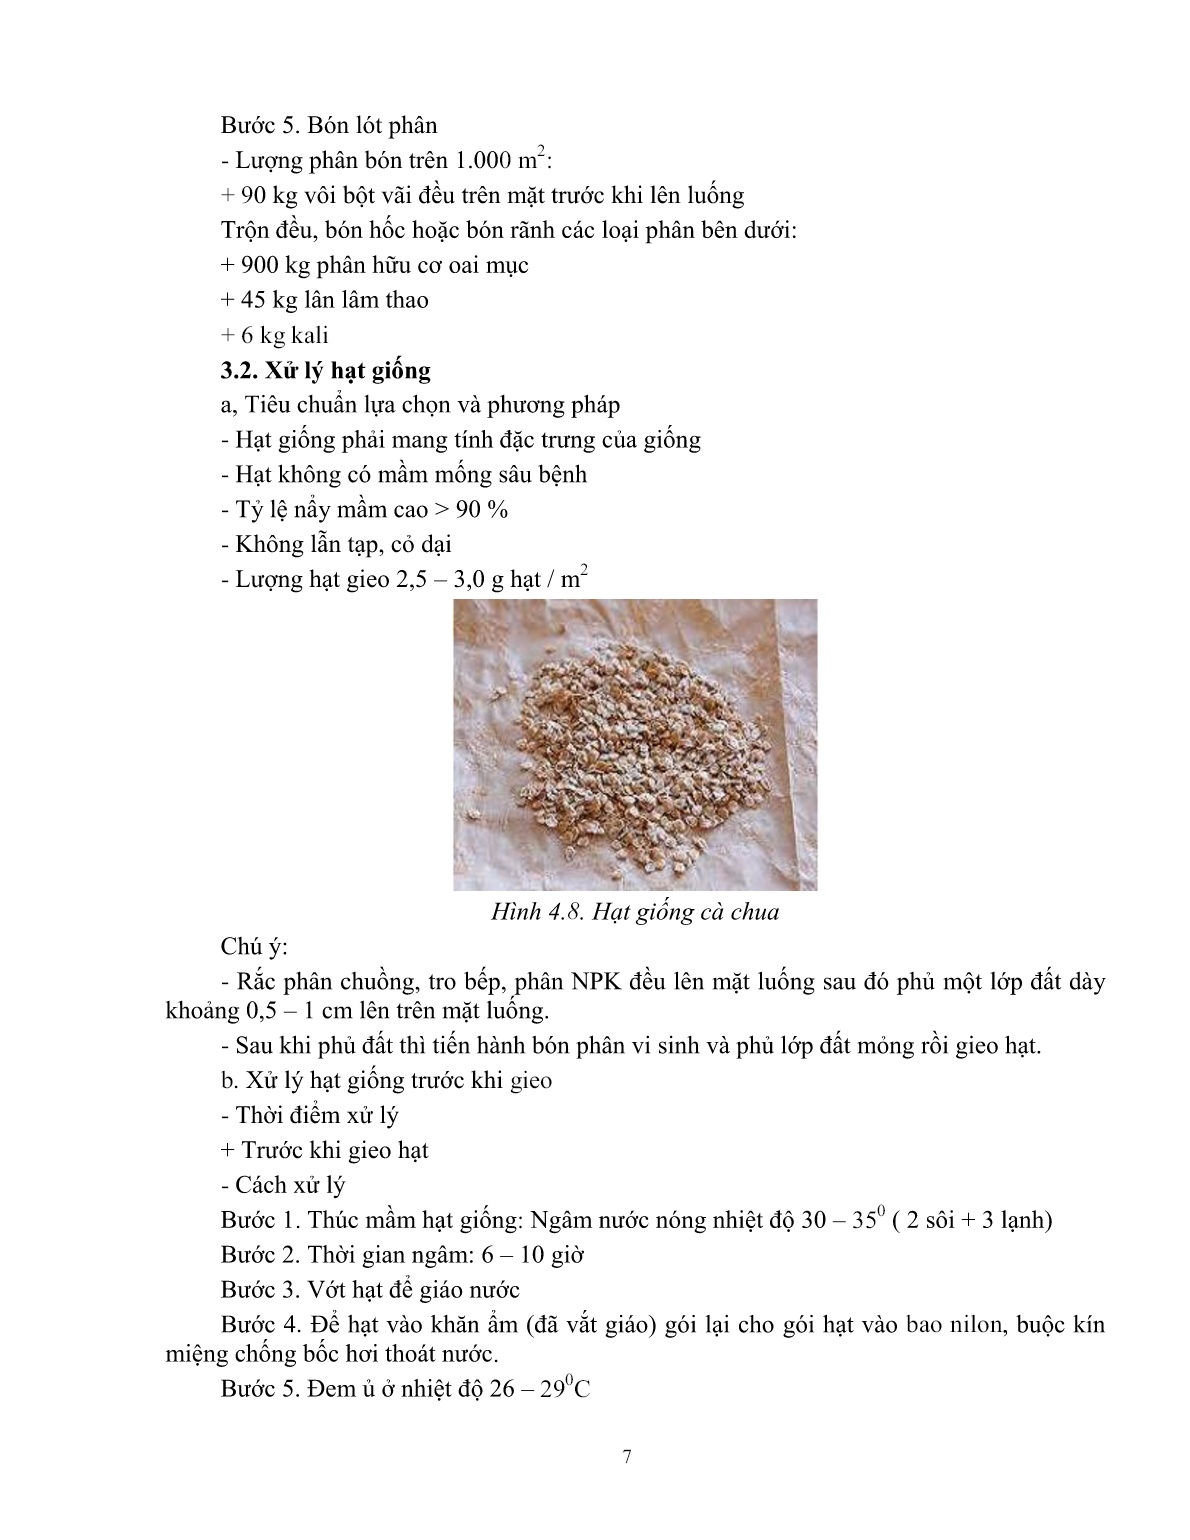 Giáo trình mô đun Trồng rau nhóm ăn quả (Trình độ: Đào tạo dưới 03 tháng) trang 8